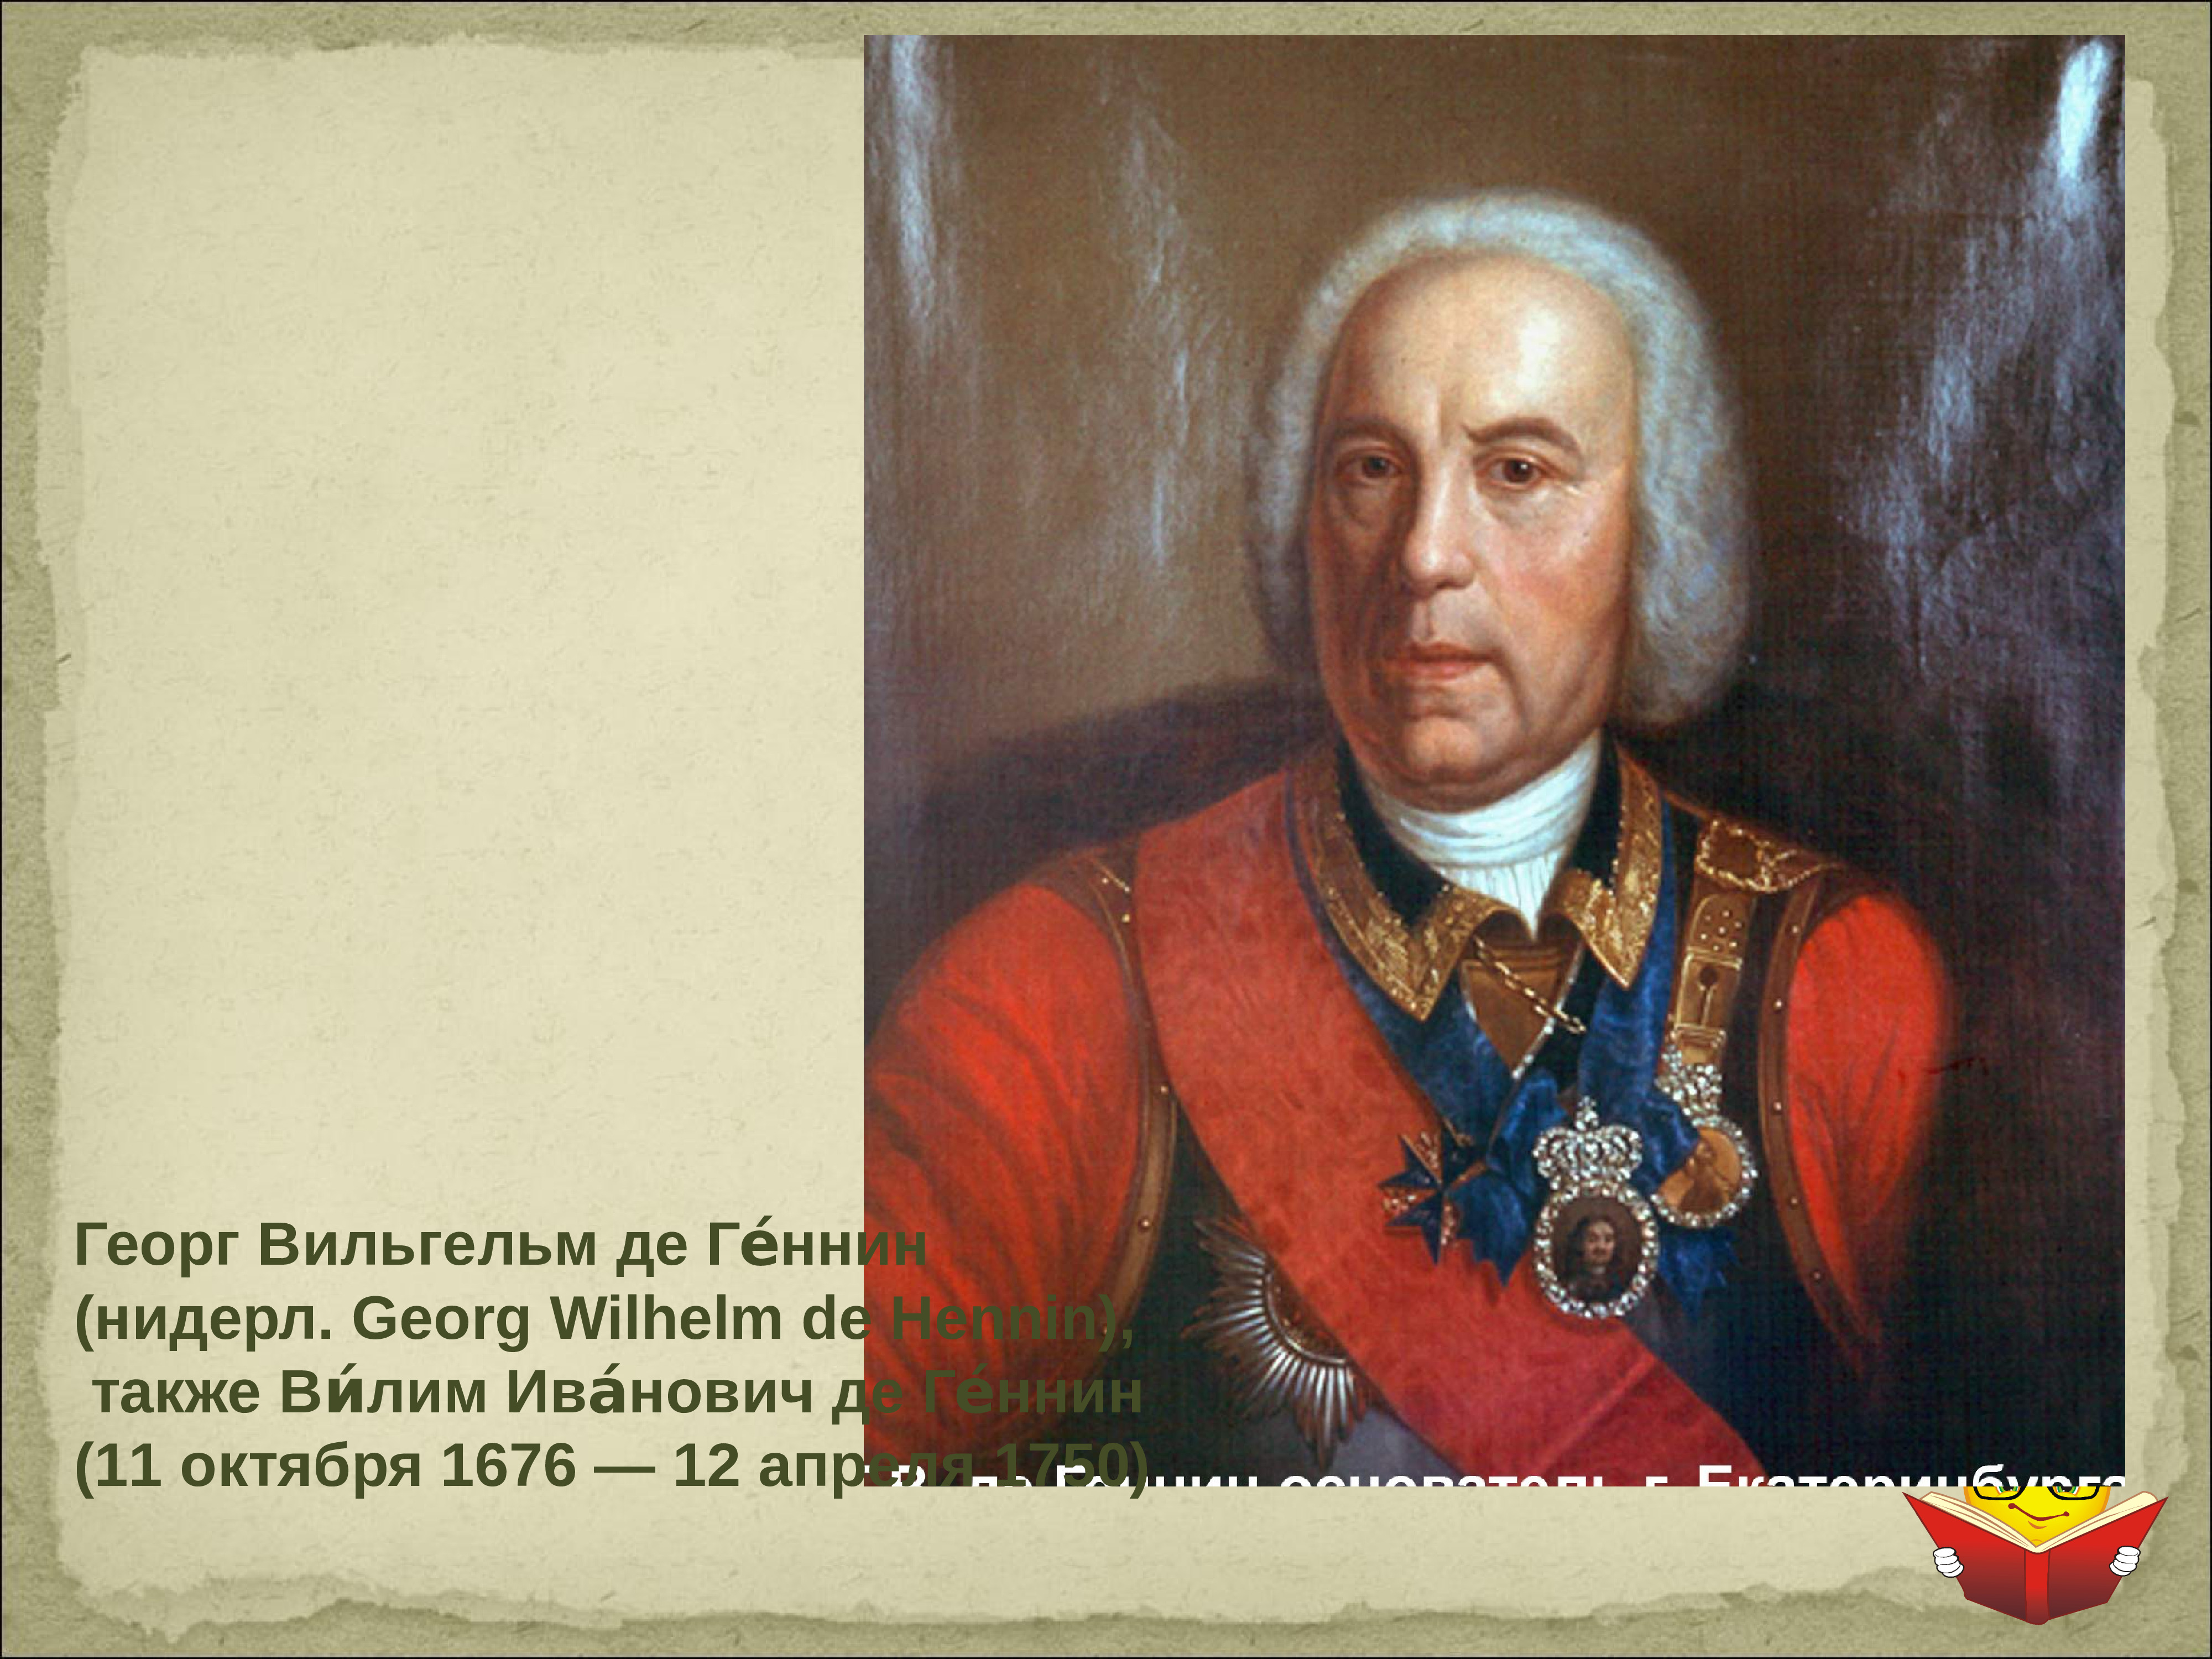 Де генин ввел слово информация. Геннин Виллим Иванович. Геннин Виллим Иванович 1676-1750.